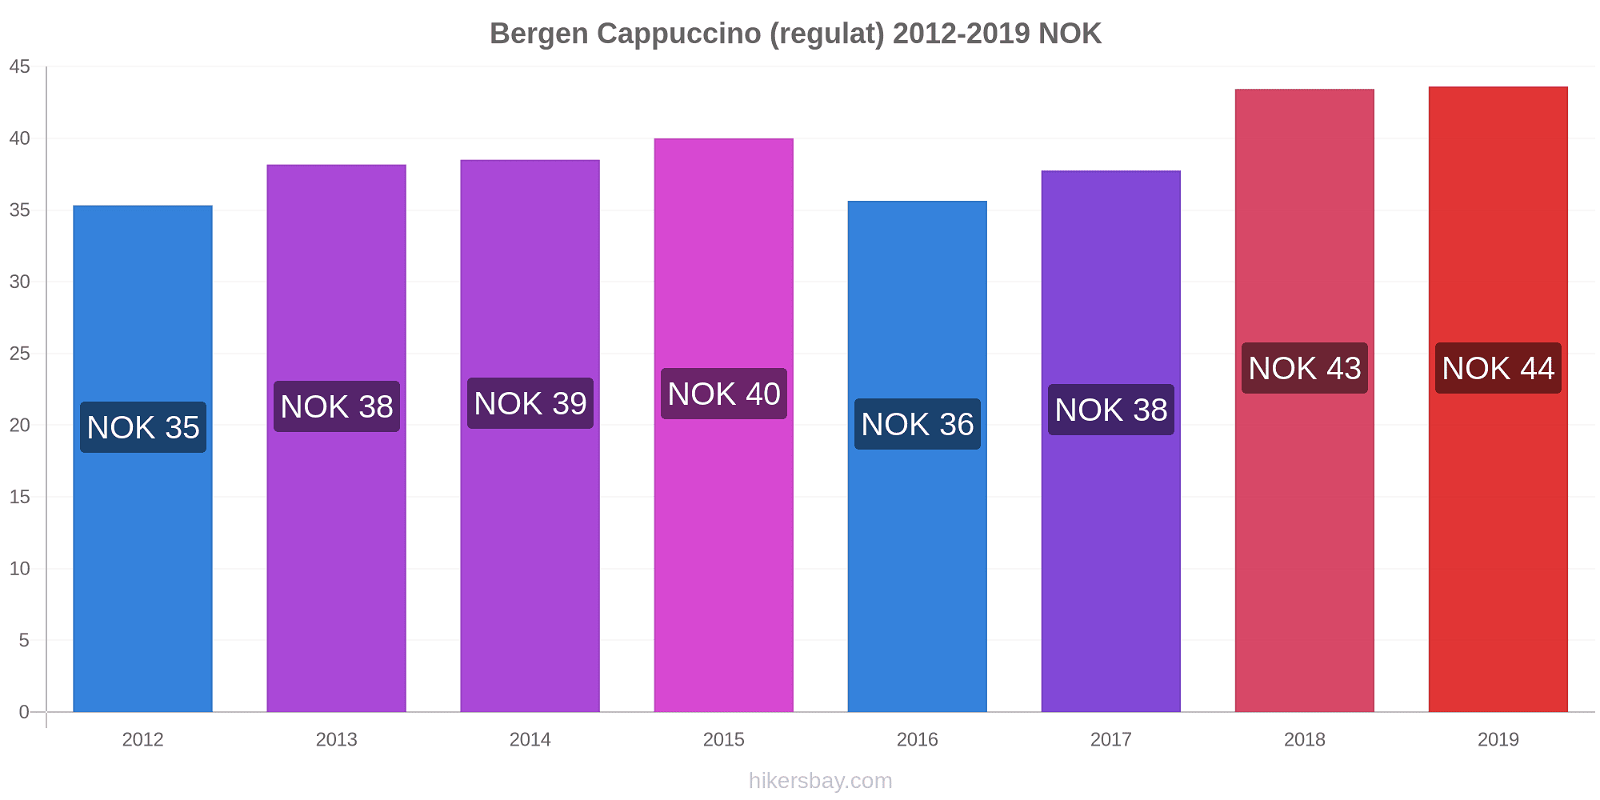 Bergen modificări de preț Cappuccino (regulat) hikersbay.com